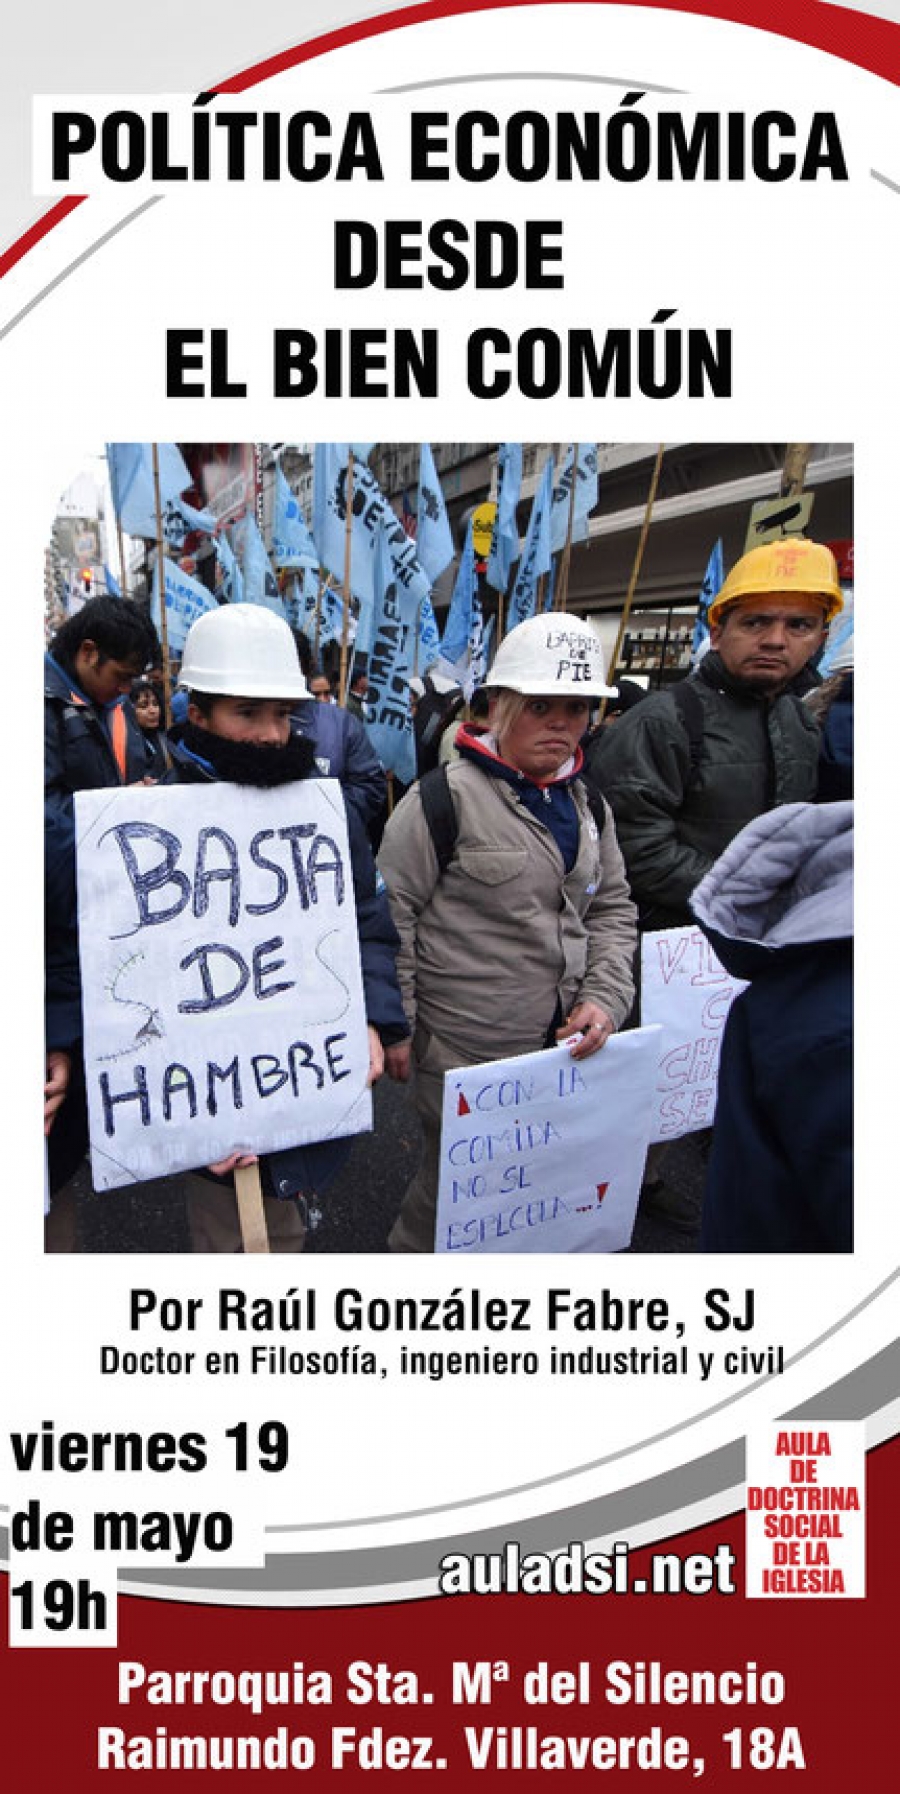 Raúl González Fabre, SJ, habla de &#039;Política económica desde el bien común&#039; en Santa María del Silencio